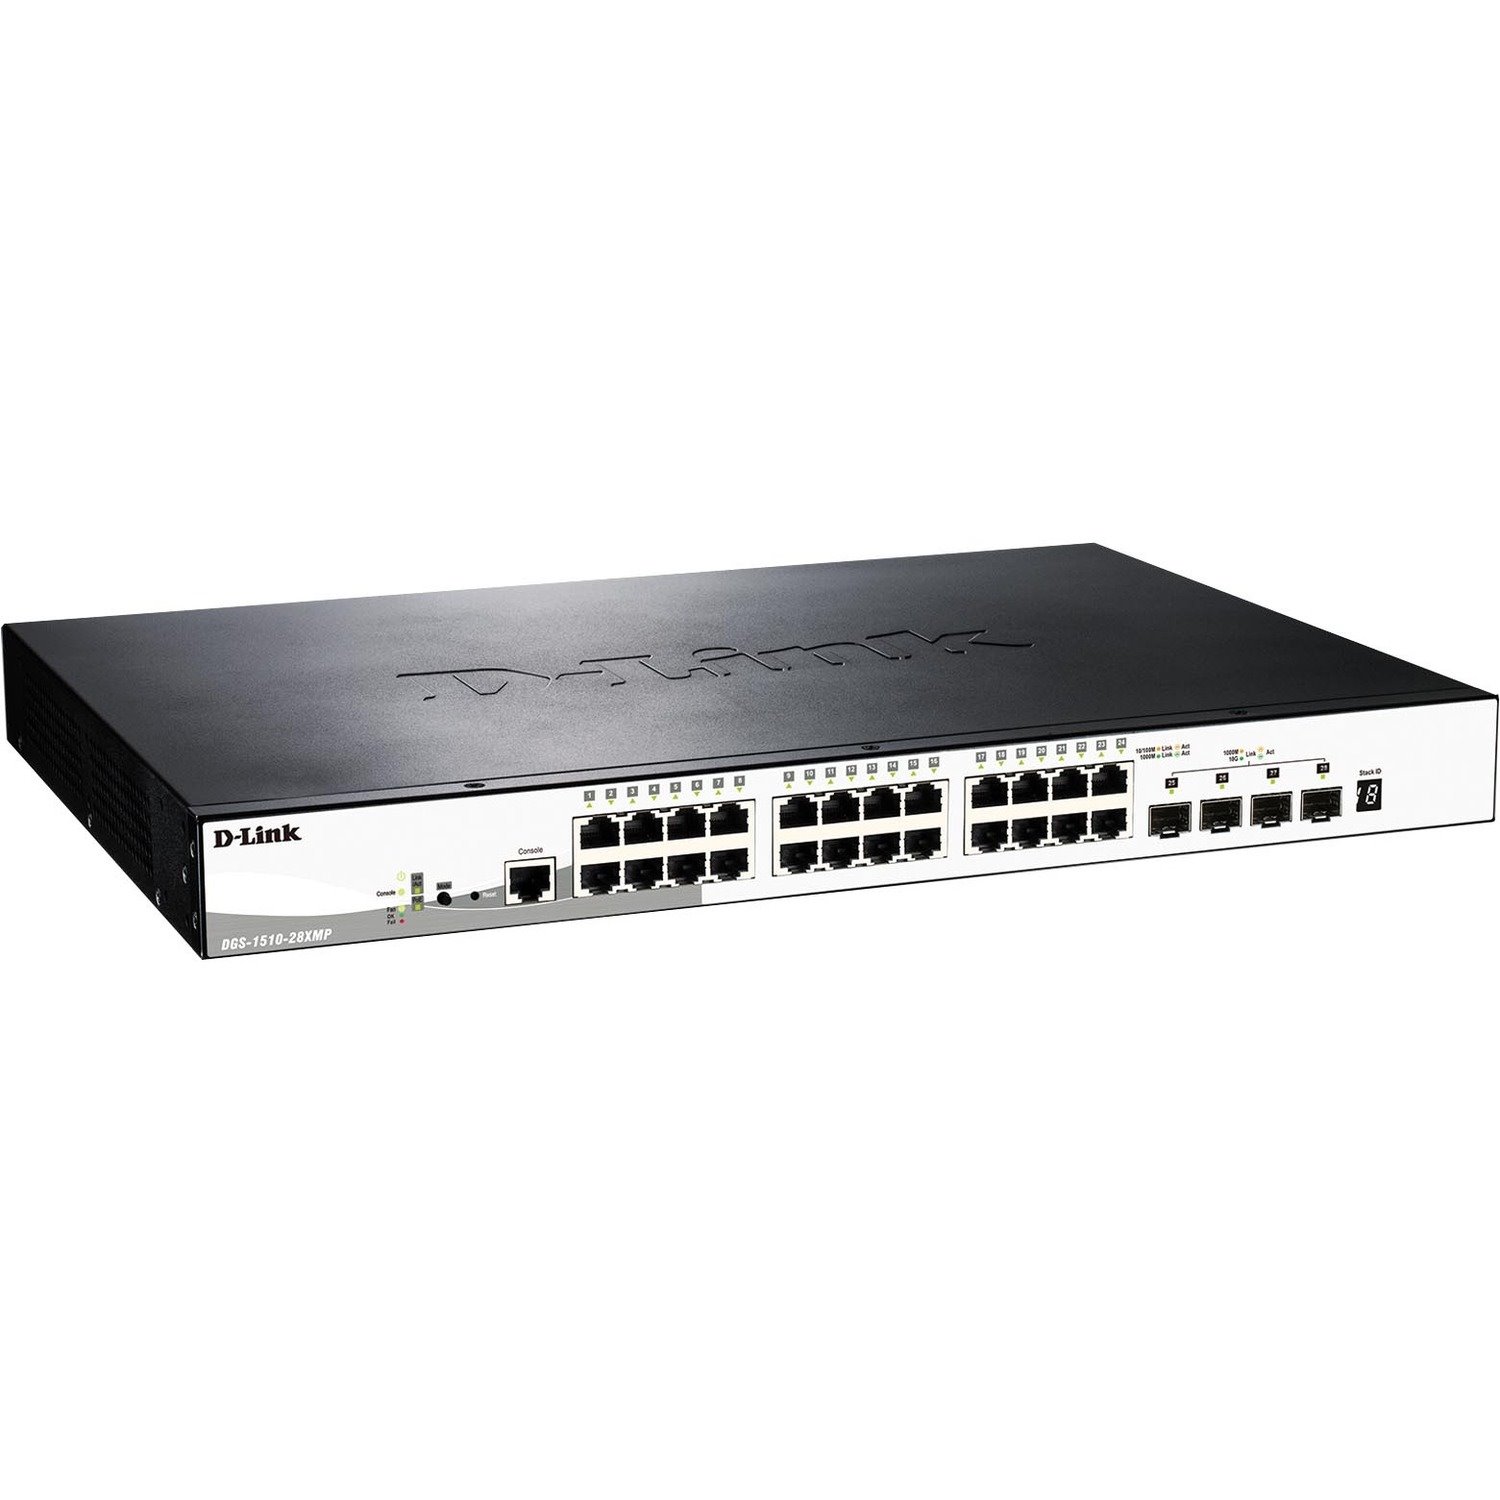 D-Link SmartPro DGS-1510 DGS-1510-28XMP 24 Ports Manageable Ethernet Switch - Gigabit Ethernet, 10 Gigabit Ethernet - 1000Base-T, 10/100/1000Base-T, 10GBase-SR, 10GBase-X, 1000Base-X, 1000Base-SX, 1000Base-LX, 10GBase-LRM